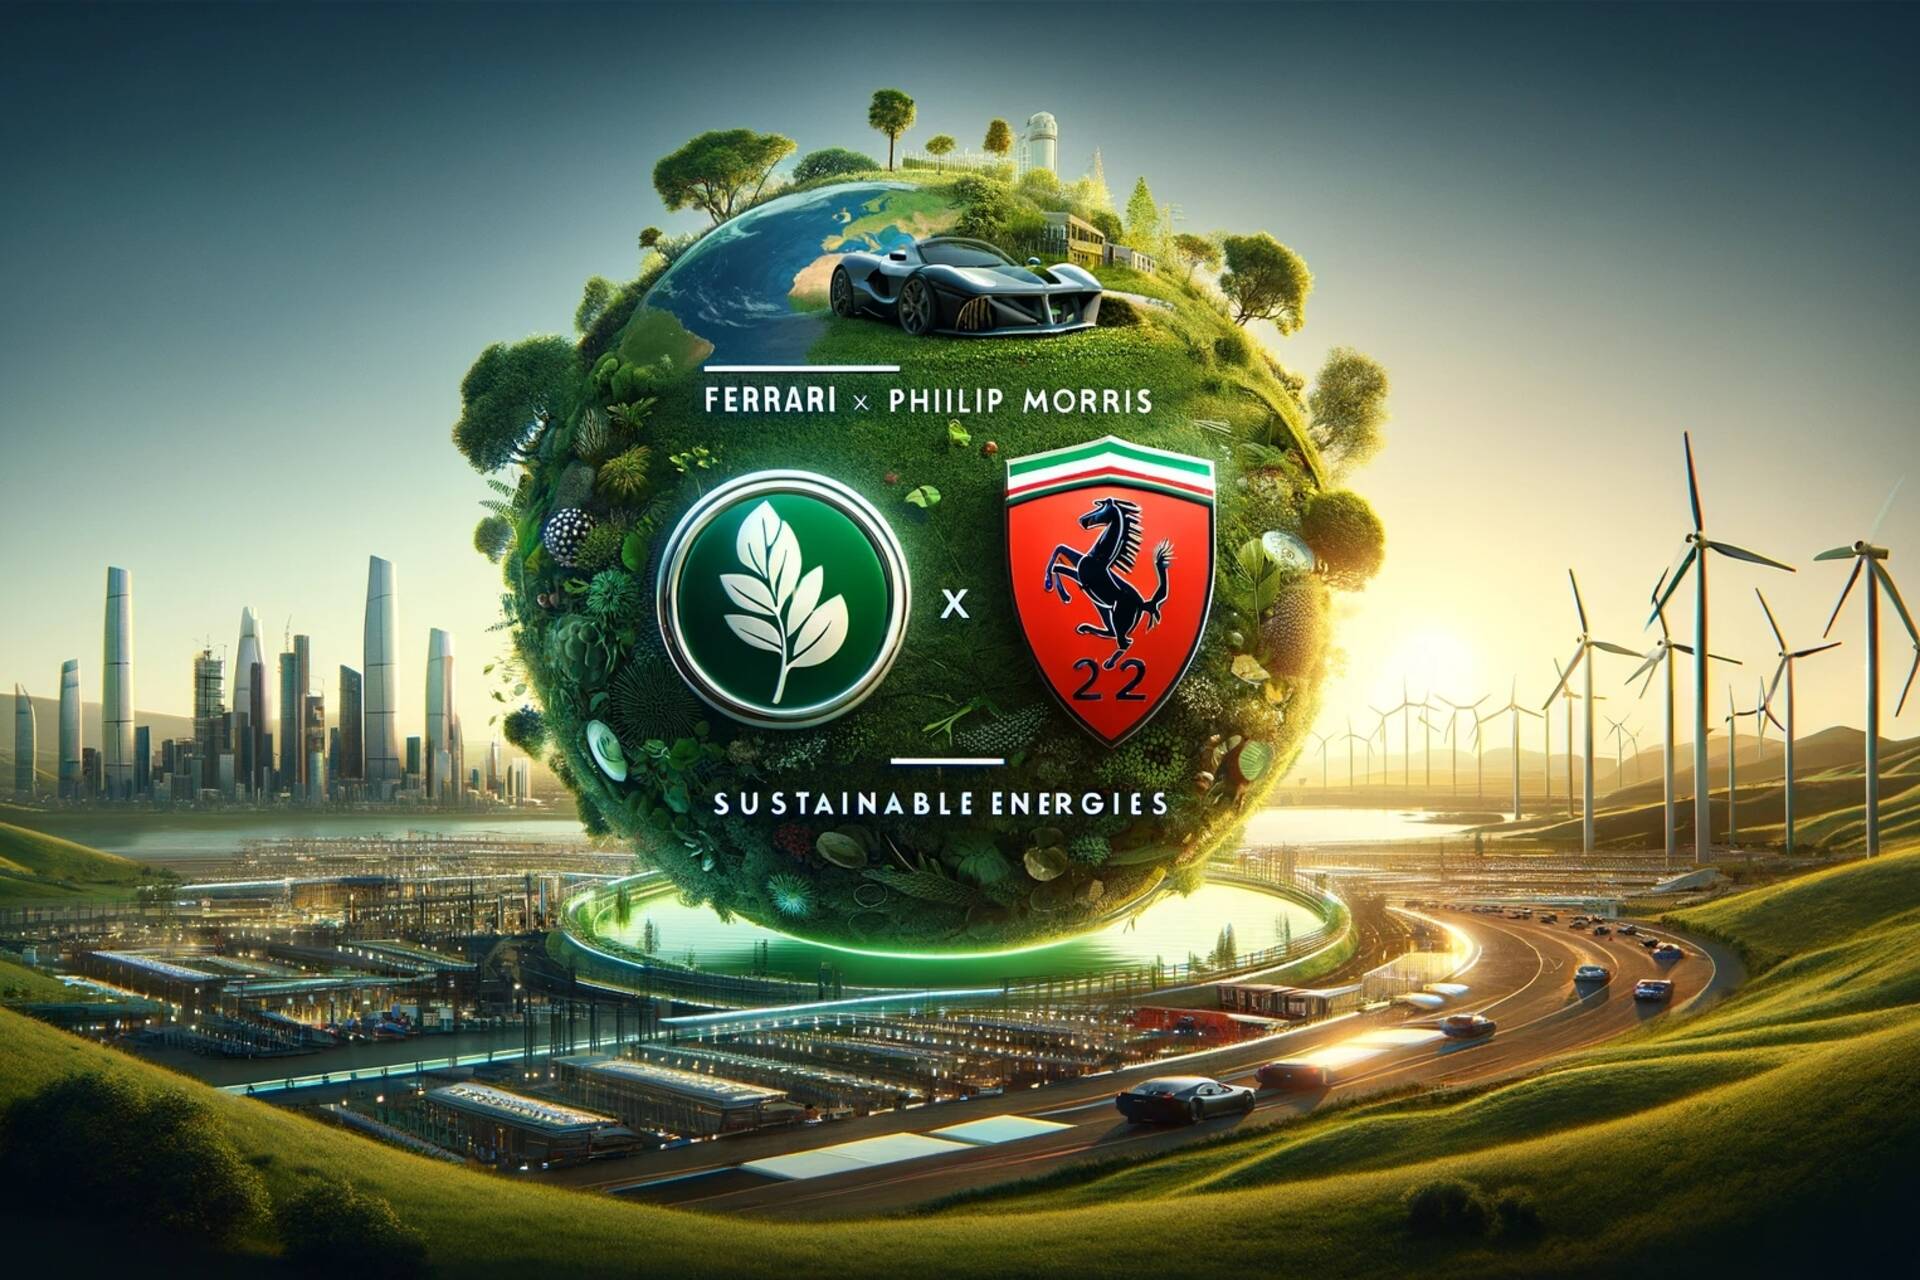 페라리 필립 모리스 인터내셔널(Ferrari Philip Morris International): 재생 가능 에너지의 생성, 저장 및 변환에서 산업 전기화에 기여하는 솔루션을 평가하기 위한 E-Lab의 예술적인 일러스트레이션